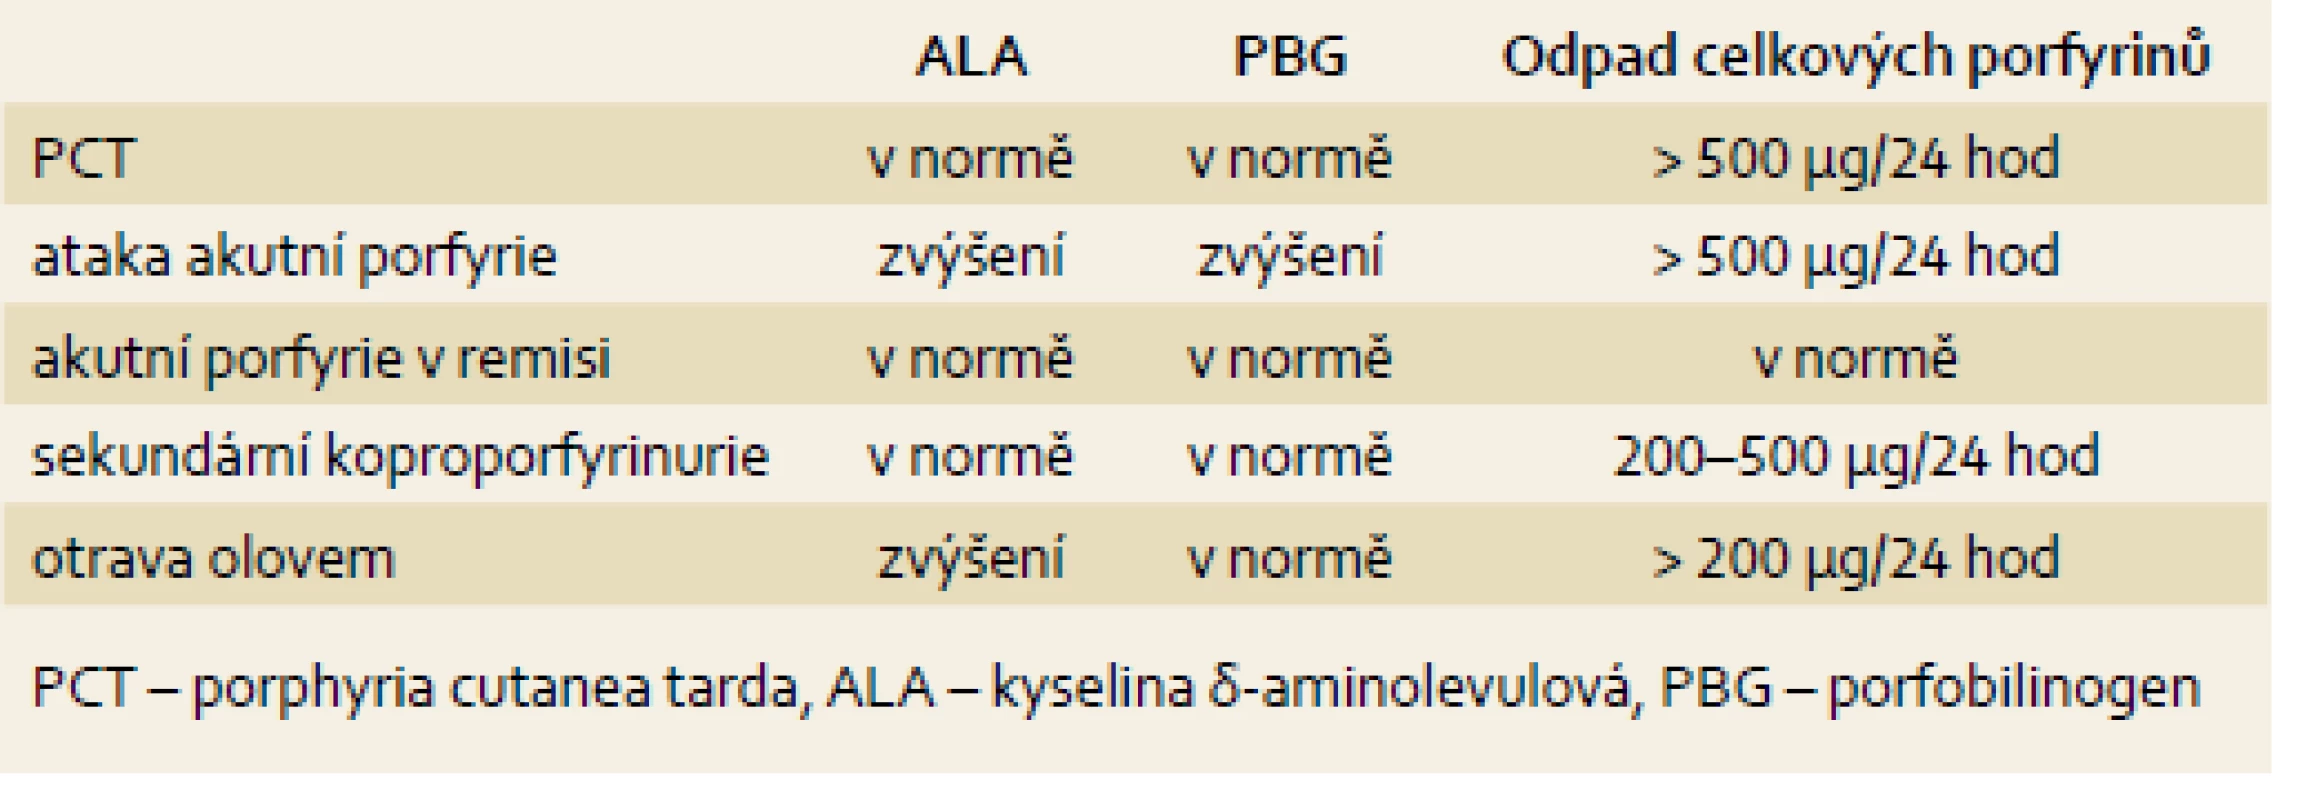 Základní laboratorní nálezy u jednotlivých typů porfyrií.
Tab. 1. Basic laboratory findings in different type of porphyrias.